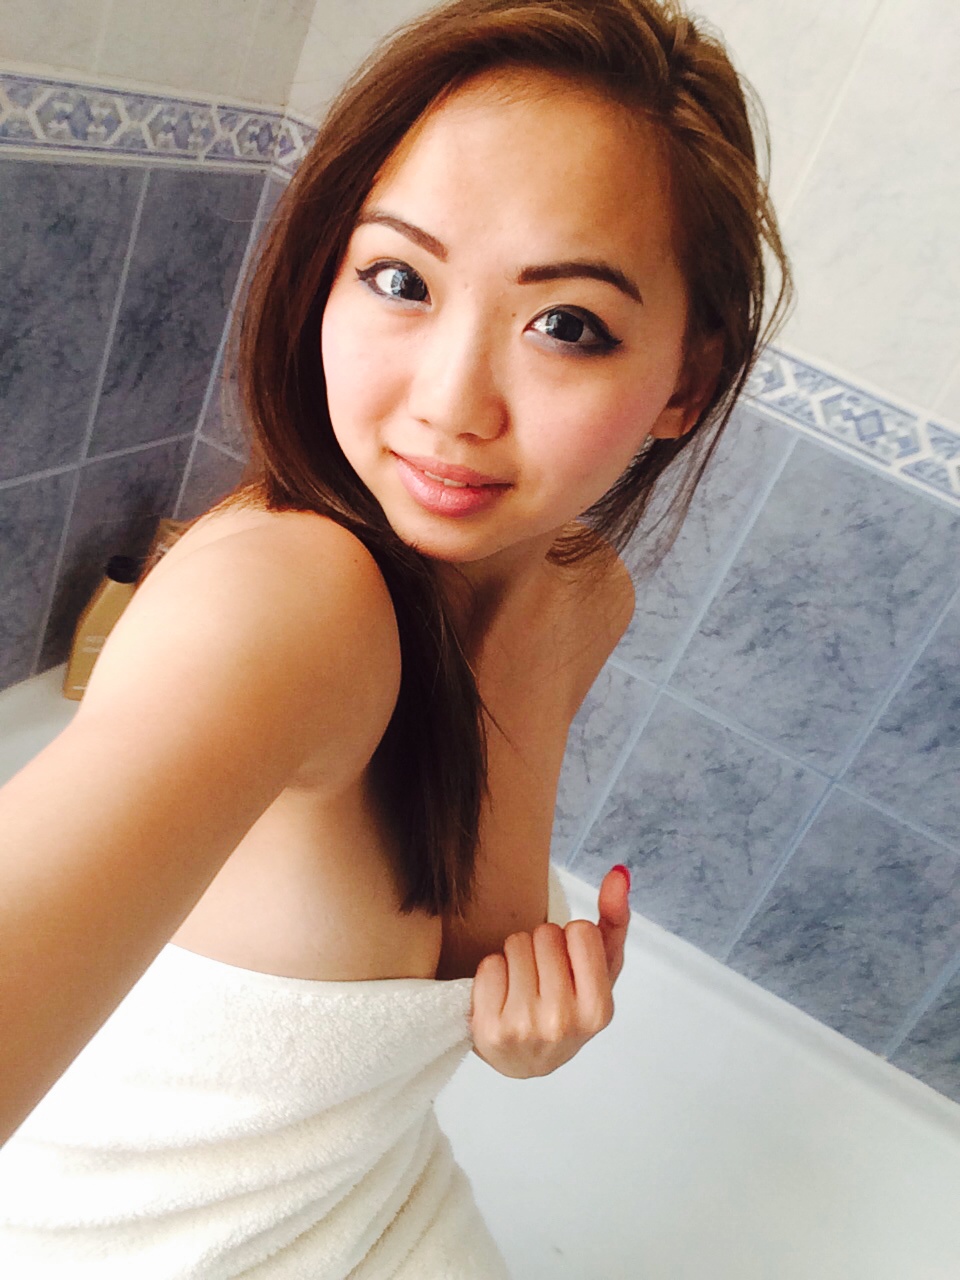 Asian girl taking shower